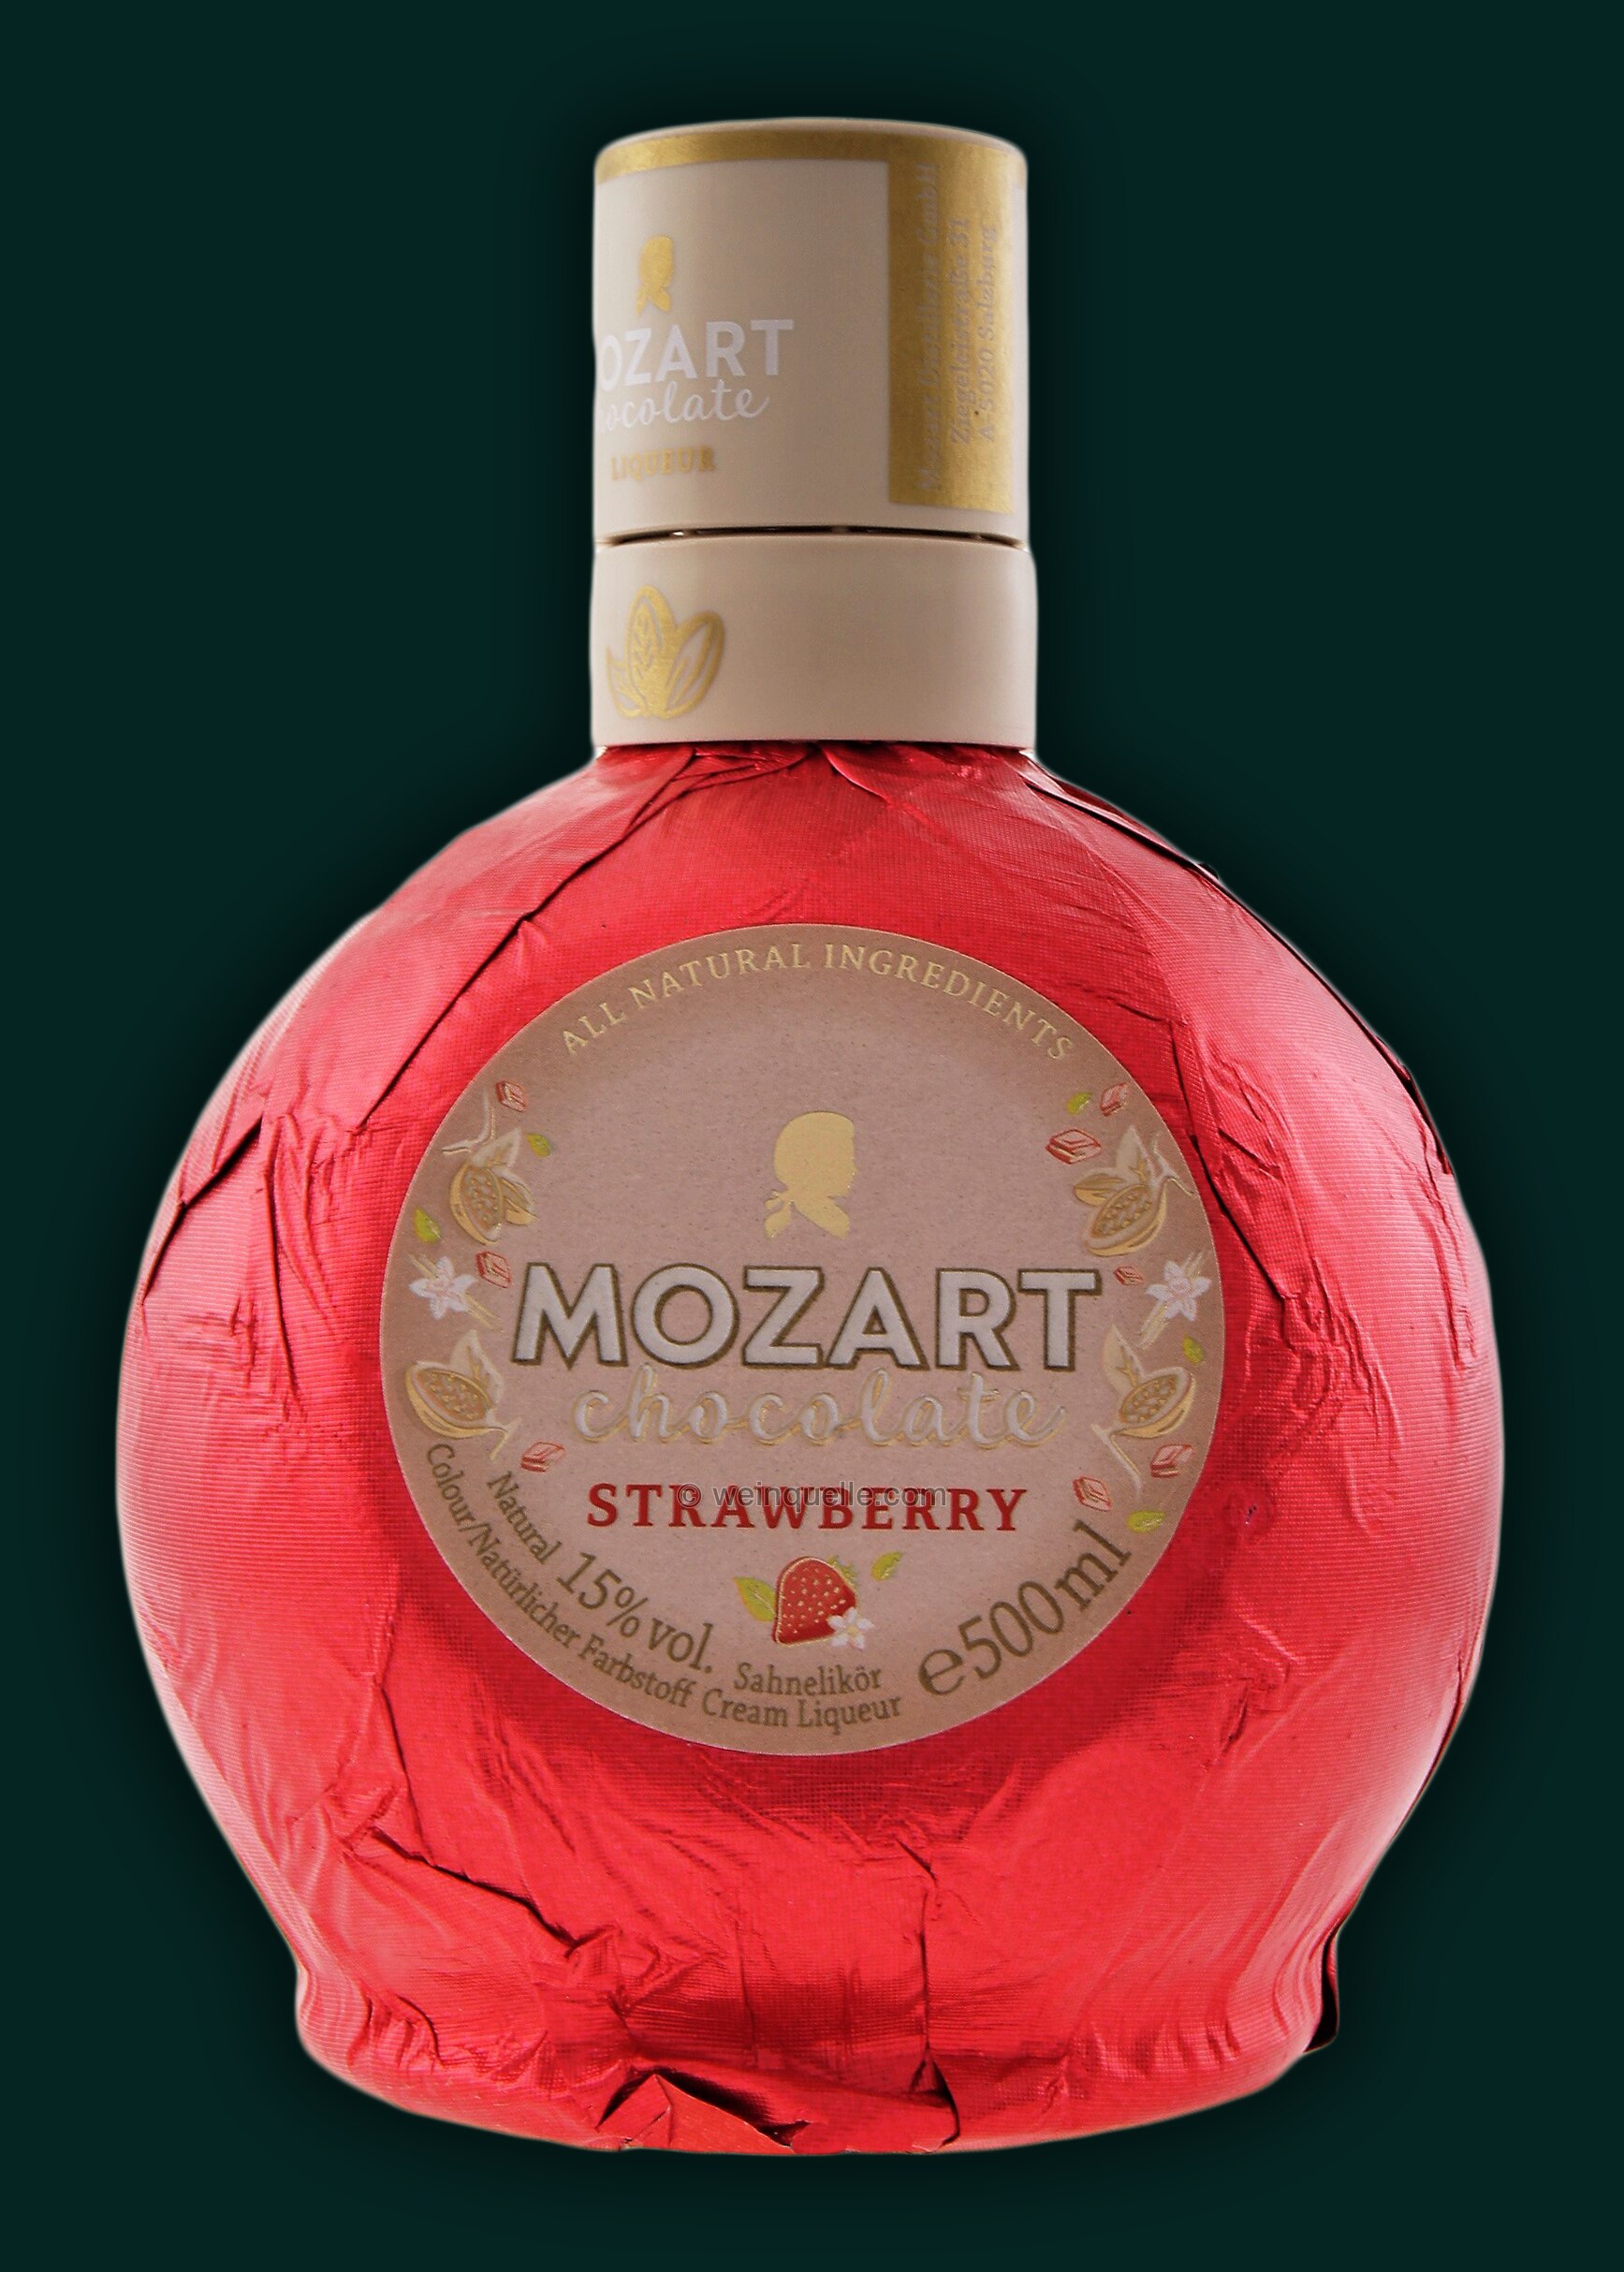 Mozart White Chocolate Strawberry Cream € Weinquelle - 0,5 Lühmann 13,75 Liter